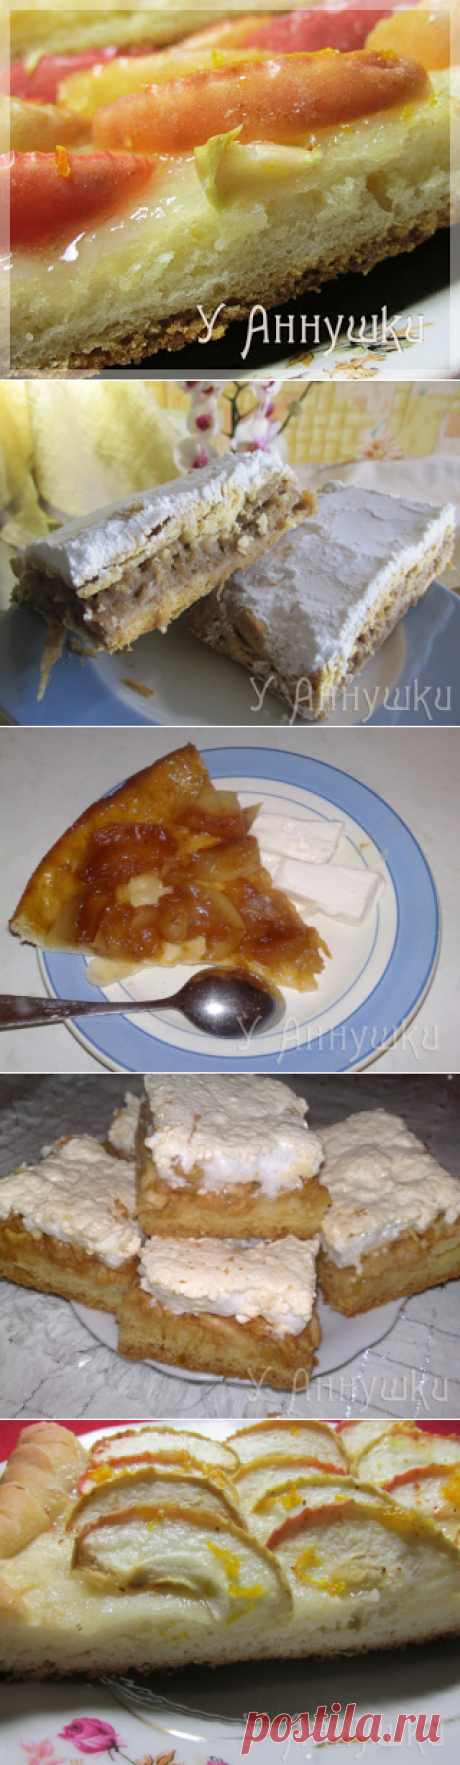 У Аннушки: Рецепты яблочных пирогов.